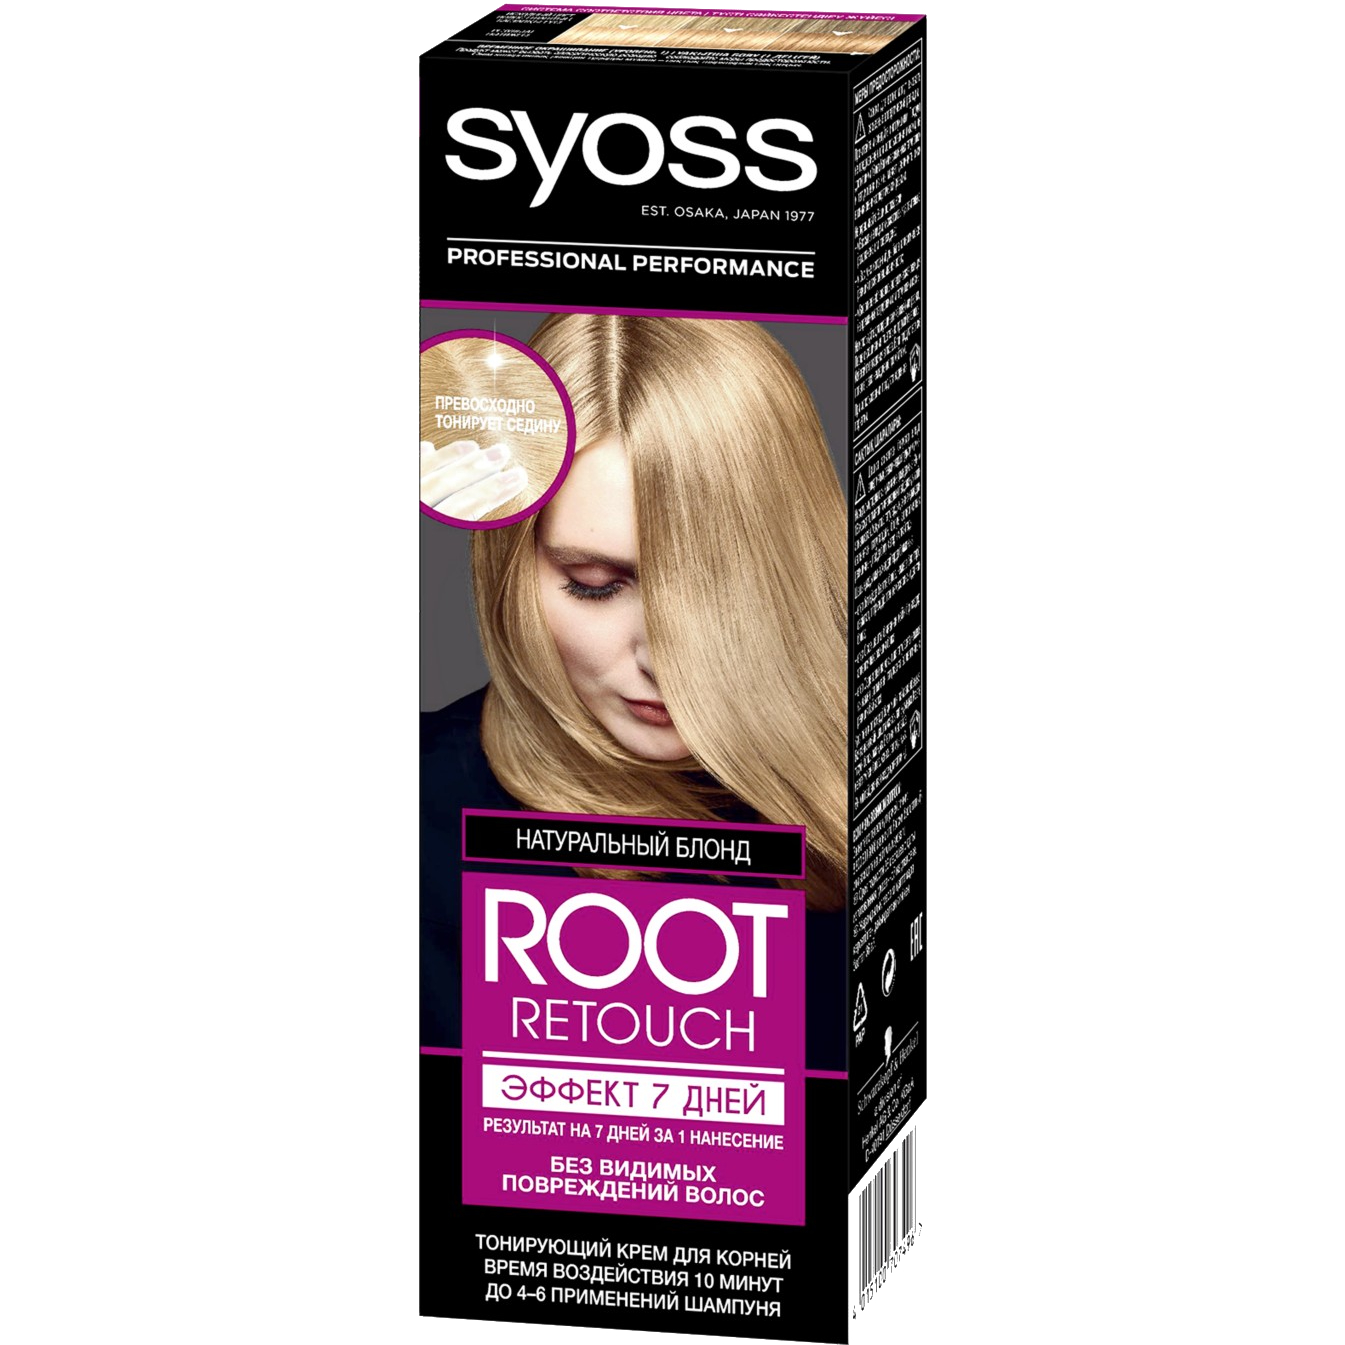 Крем для волос Syoss Root Retoucher тонирующий Эффект 7 дней оттенок 8.0 Натуральный Блонд, 60 мл бальзам оттеночный для волос fitocolor тон платиновый блонд 140мл